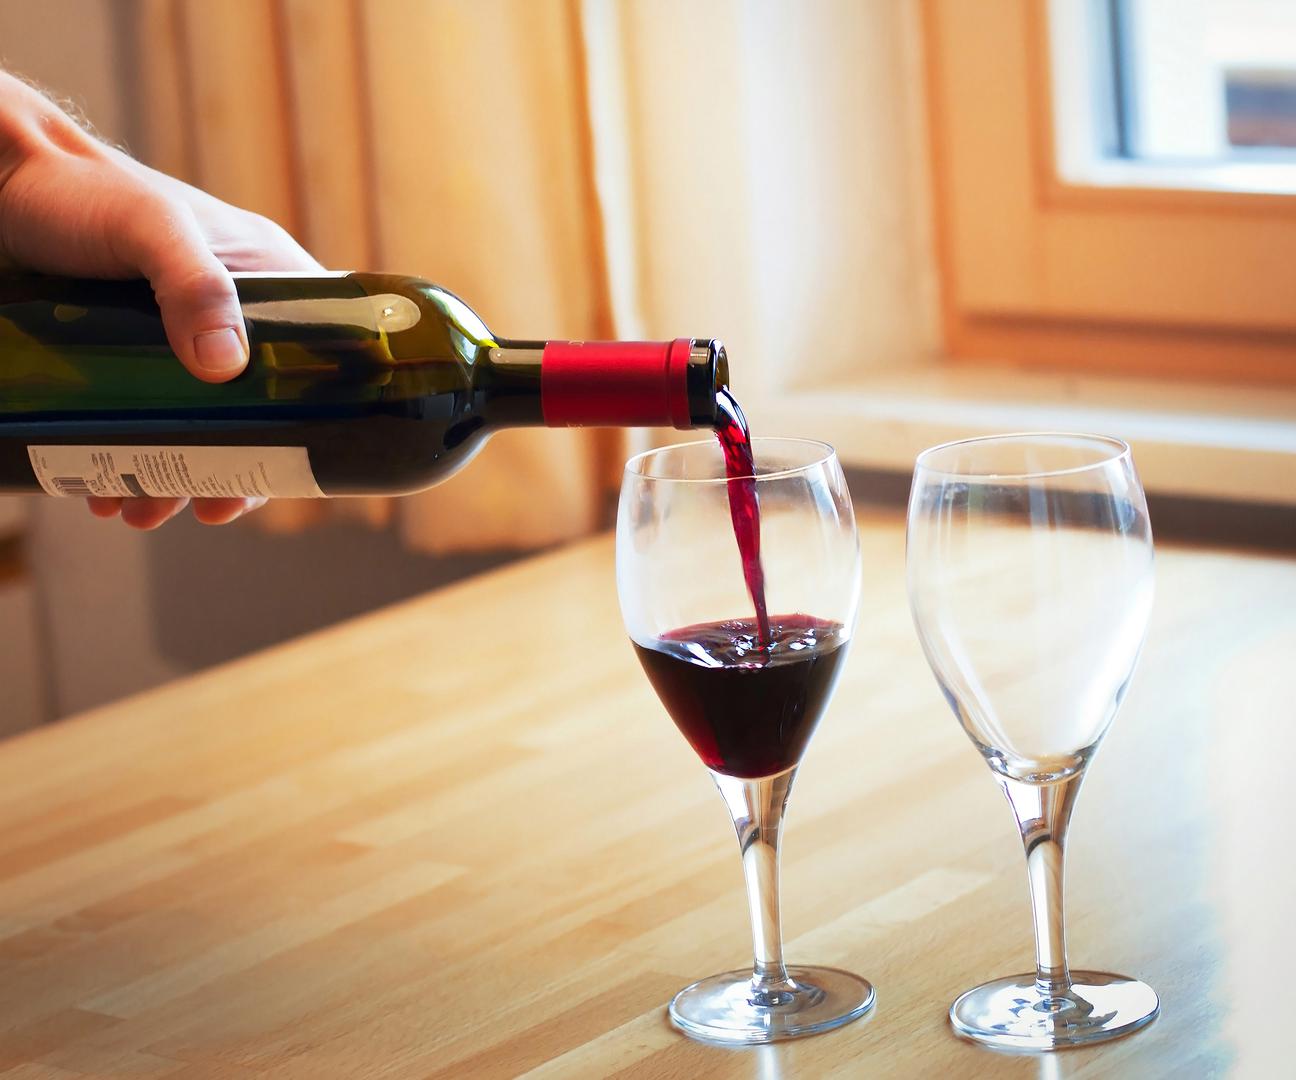 Istraživanje je pokazalo da gotovo polovica odraslih koji konzumiraju crno vino u UK, ne rashlađuju ga. Tek osam posto ispitanika izjavilo je da piju crno vino tijekom vrućih ljetnih mjeseci. 